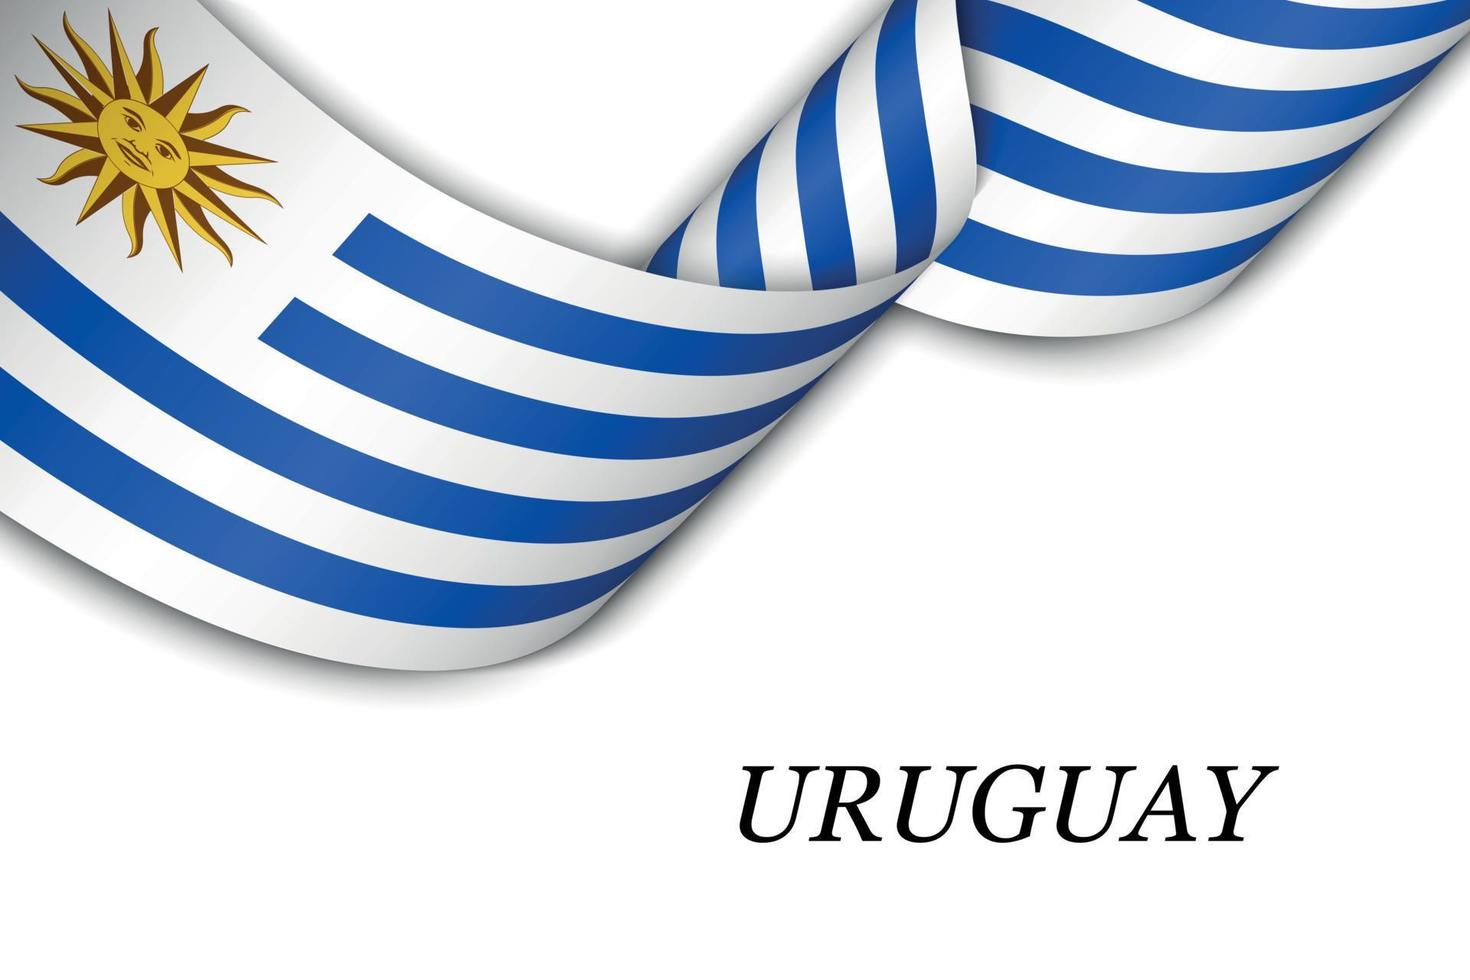 schwenkendes band oder banner mit der flagge von uruguay vektor